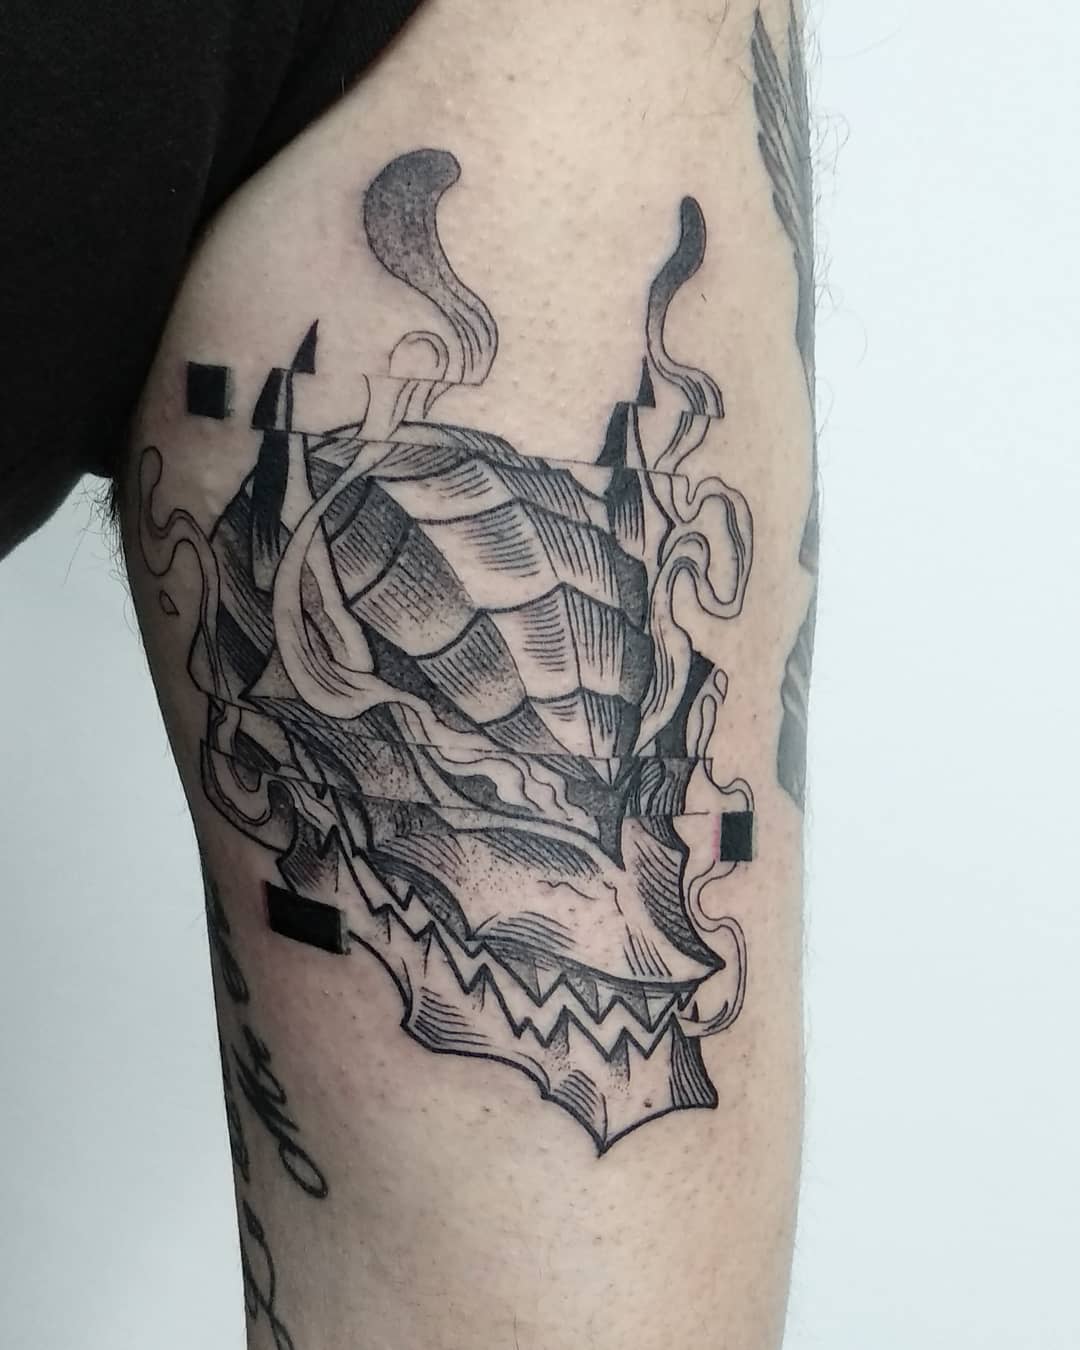 Tatuaje Lobo Berserk -yustecore_tattoo